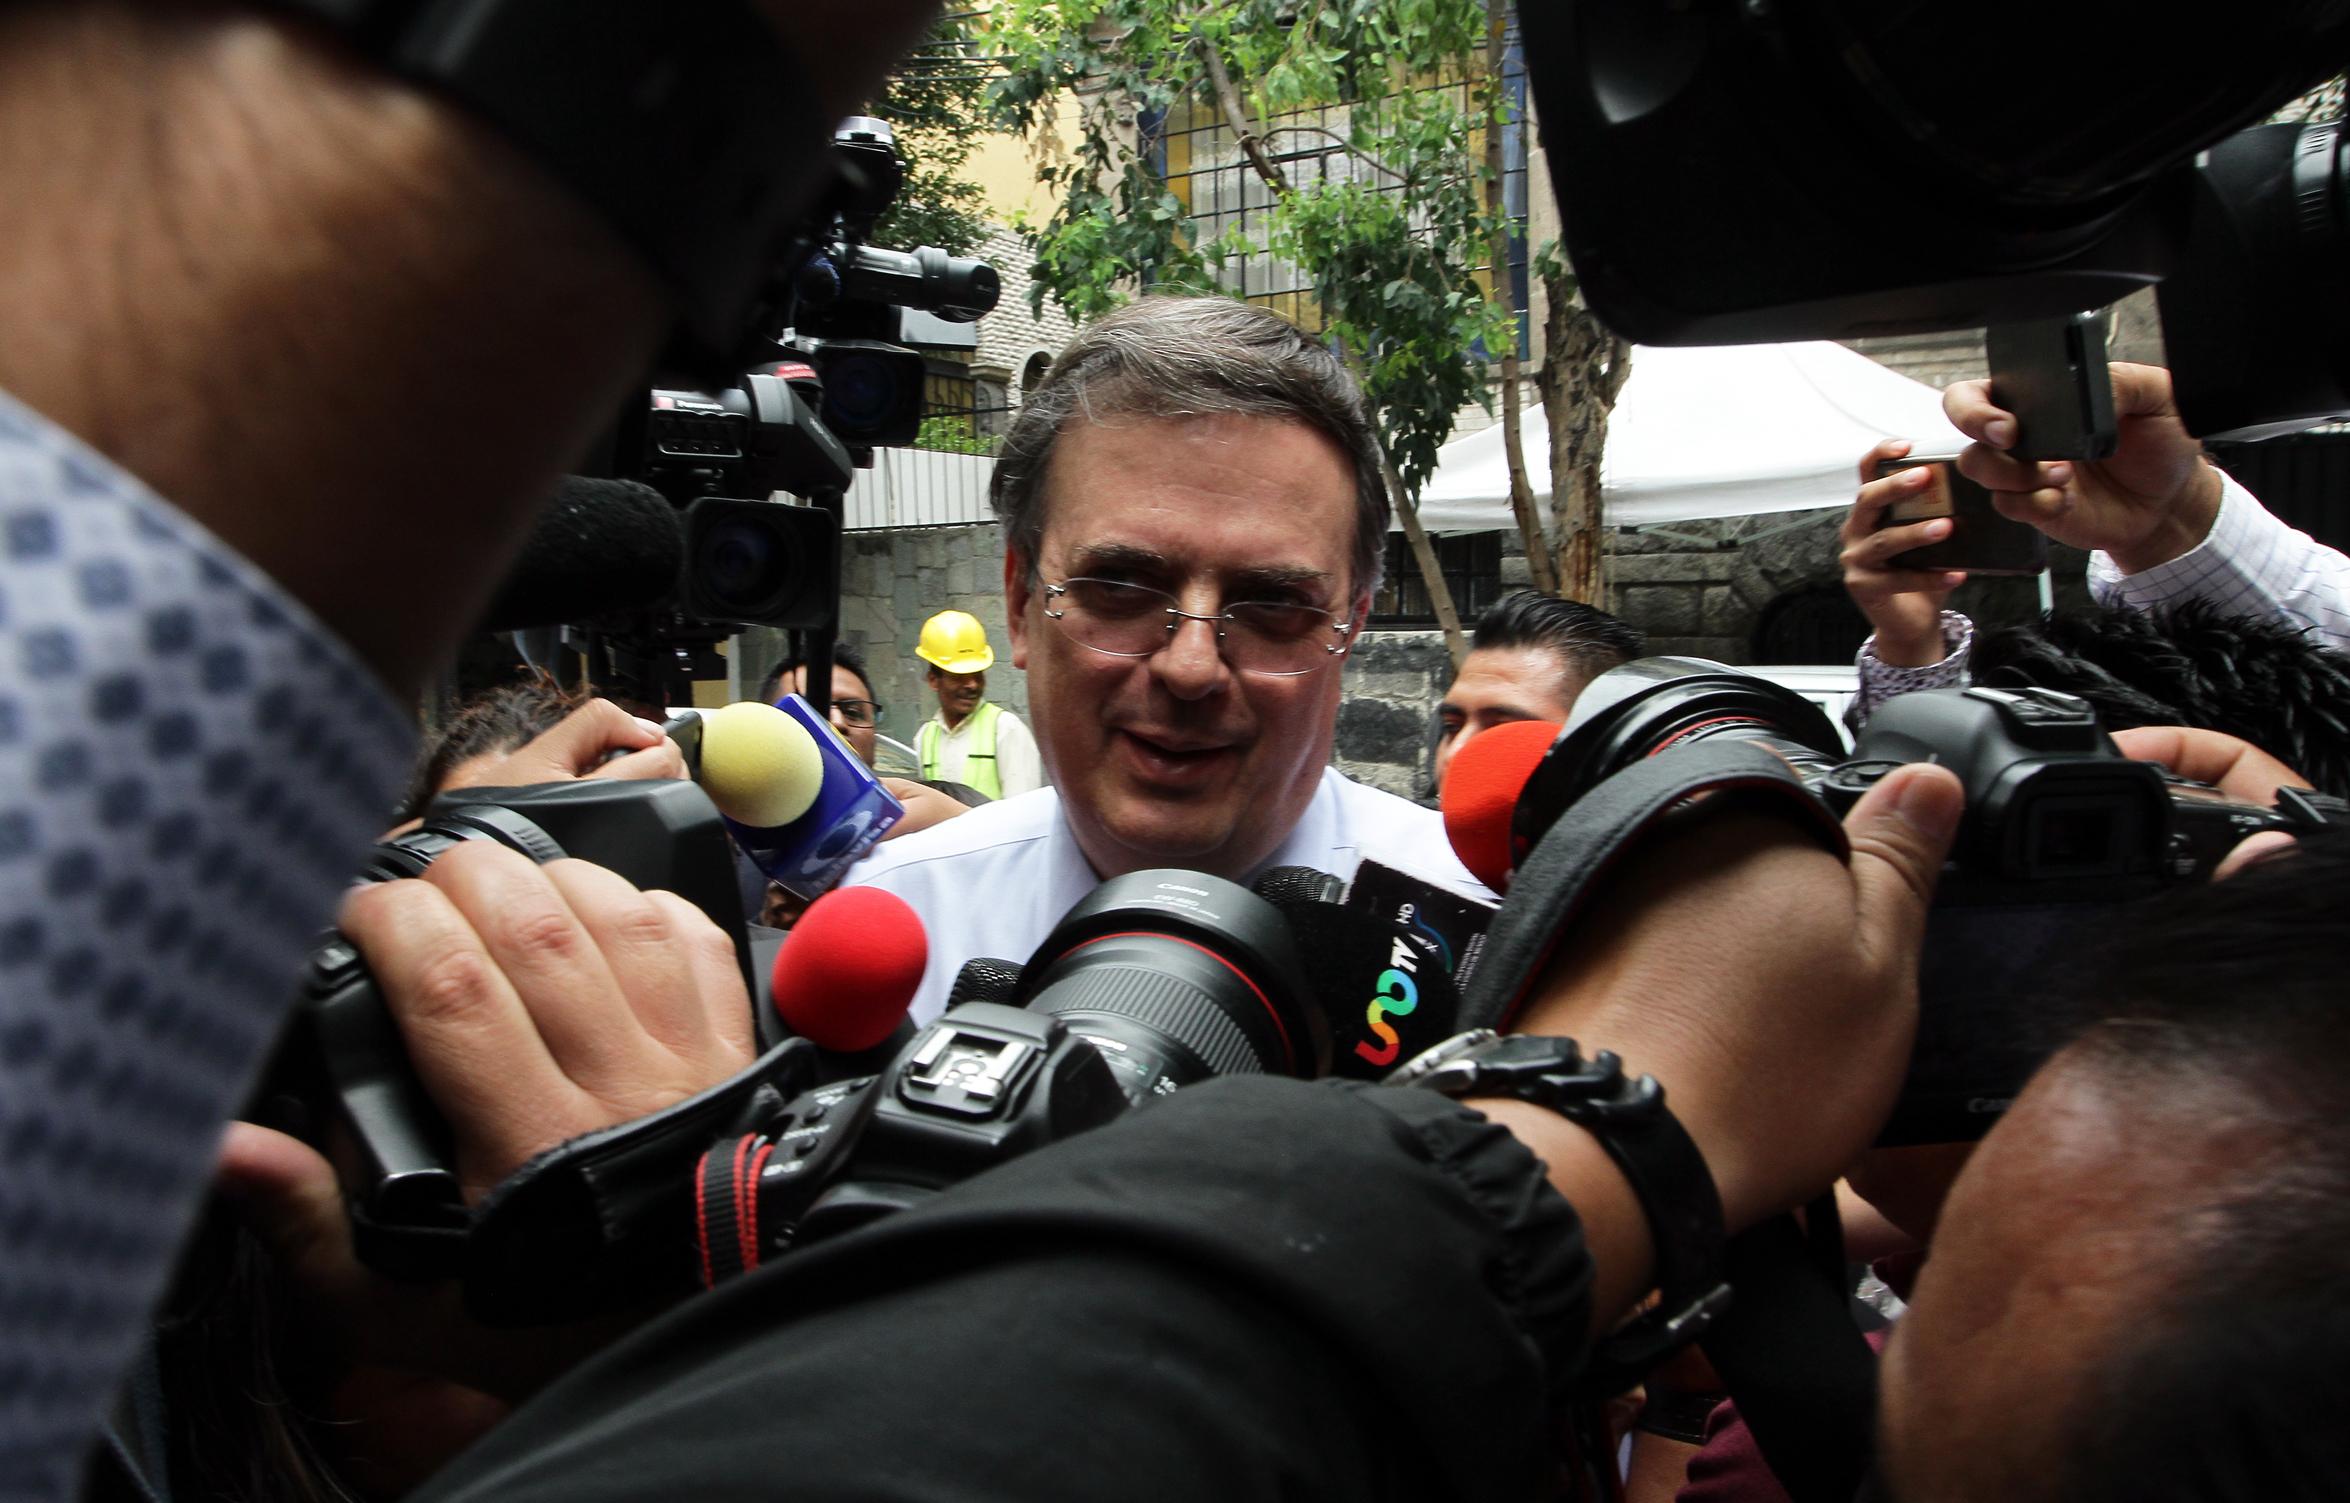 Confirma Ebrard desaparición de ProMéxico; embajadores harán sus funciones